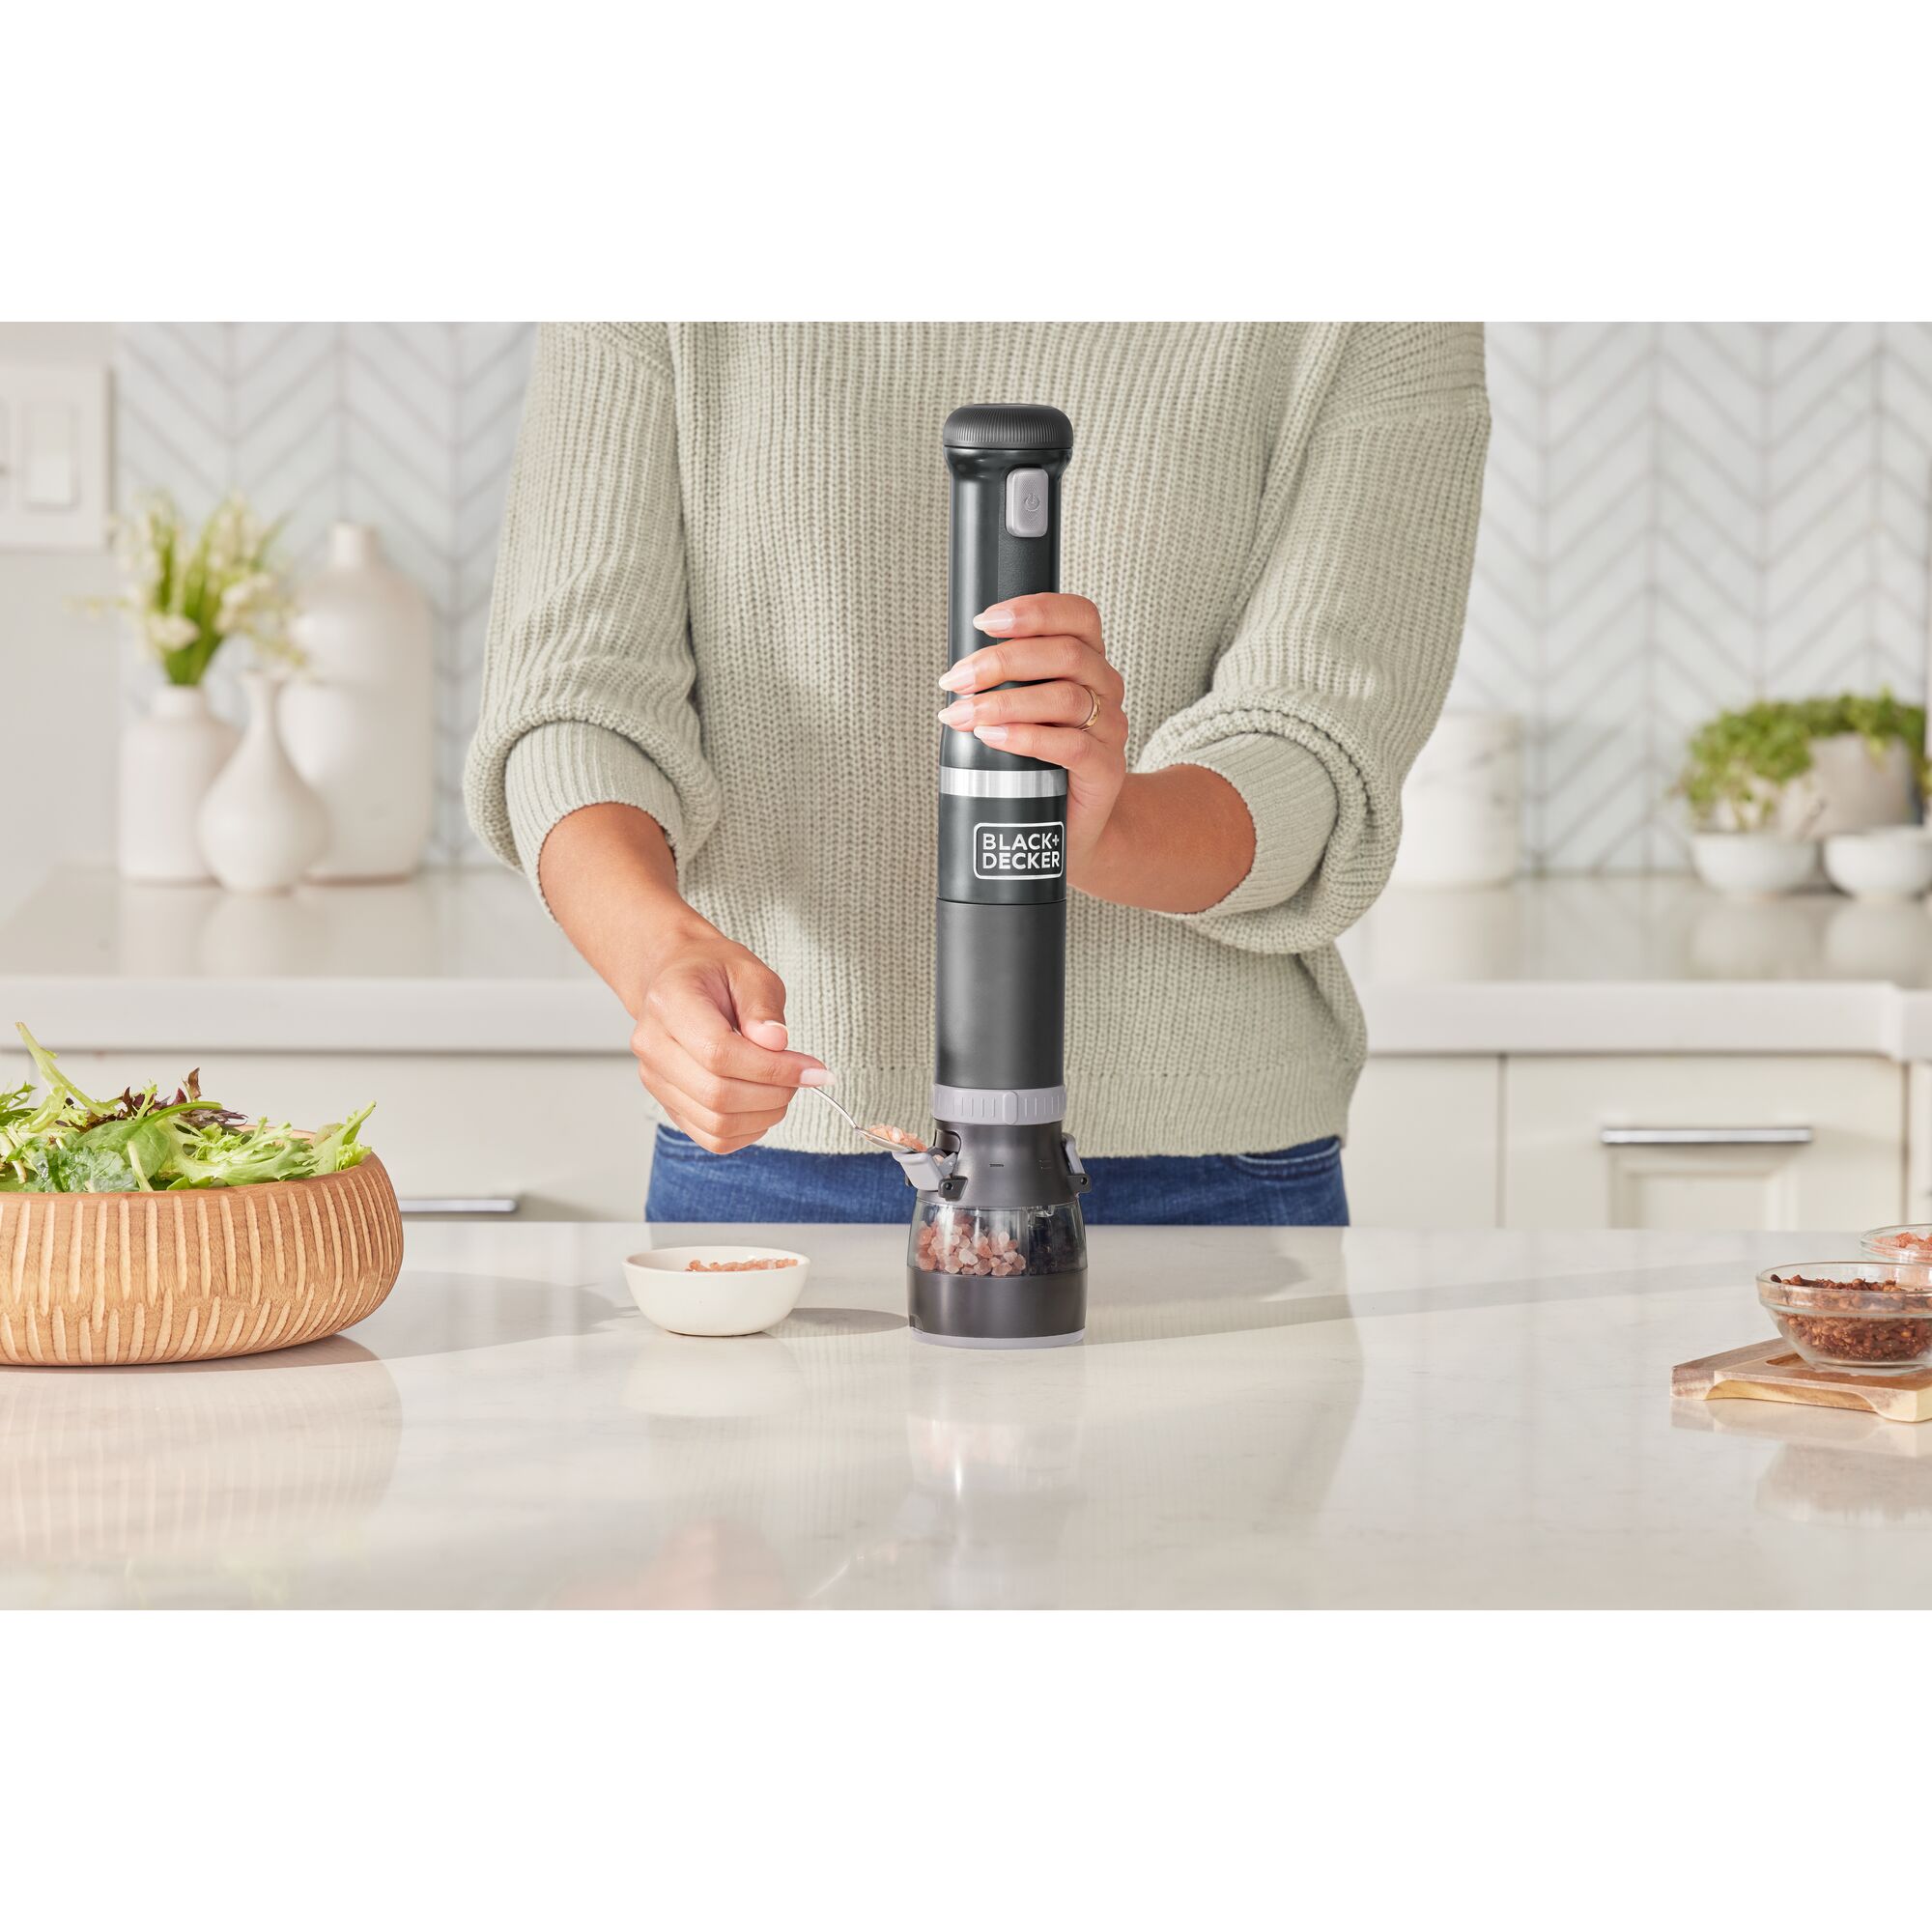 Talent adding salt crystals to the black, BLACK+DECKER kitchen wand spice grinder attachment